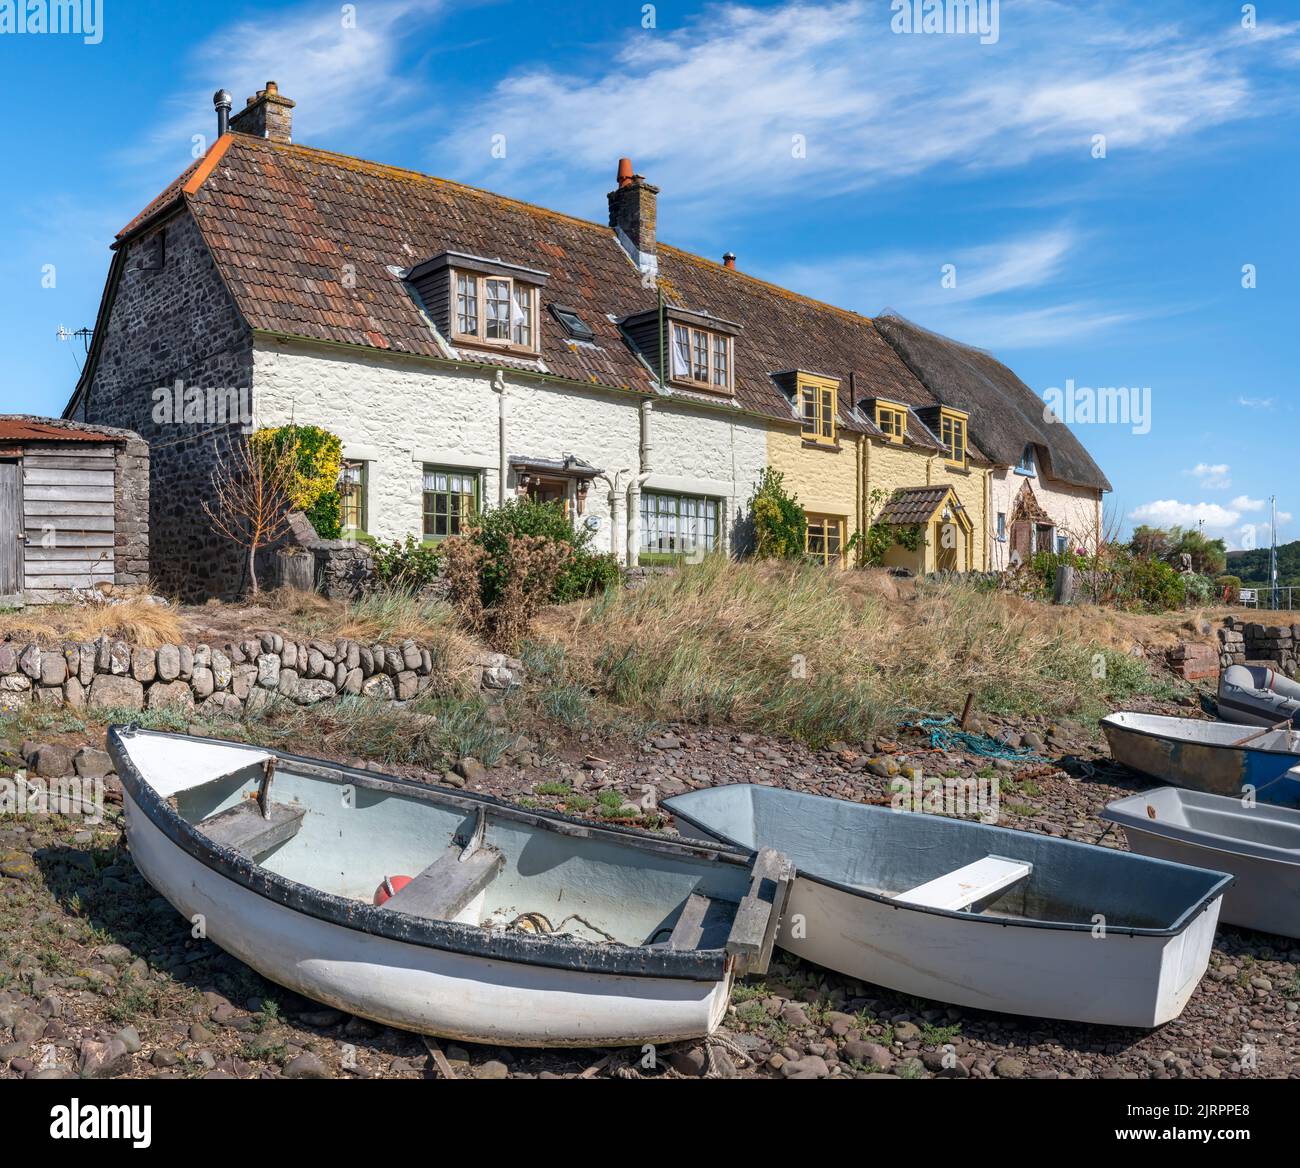 A marée basse, une rangée de petits bateaux se trouve sur le bardeau en police des petites maisons de Porlock Weir dans le Somerset. Banque D'Images